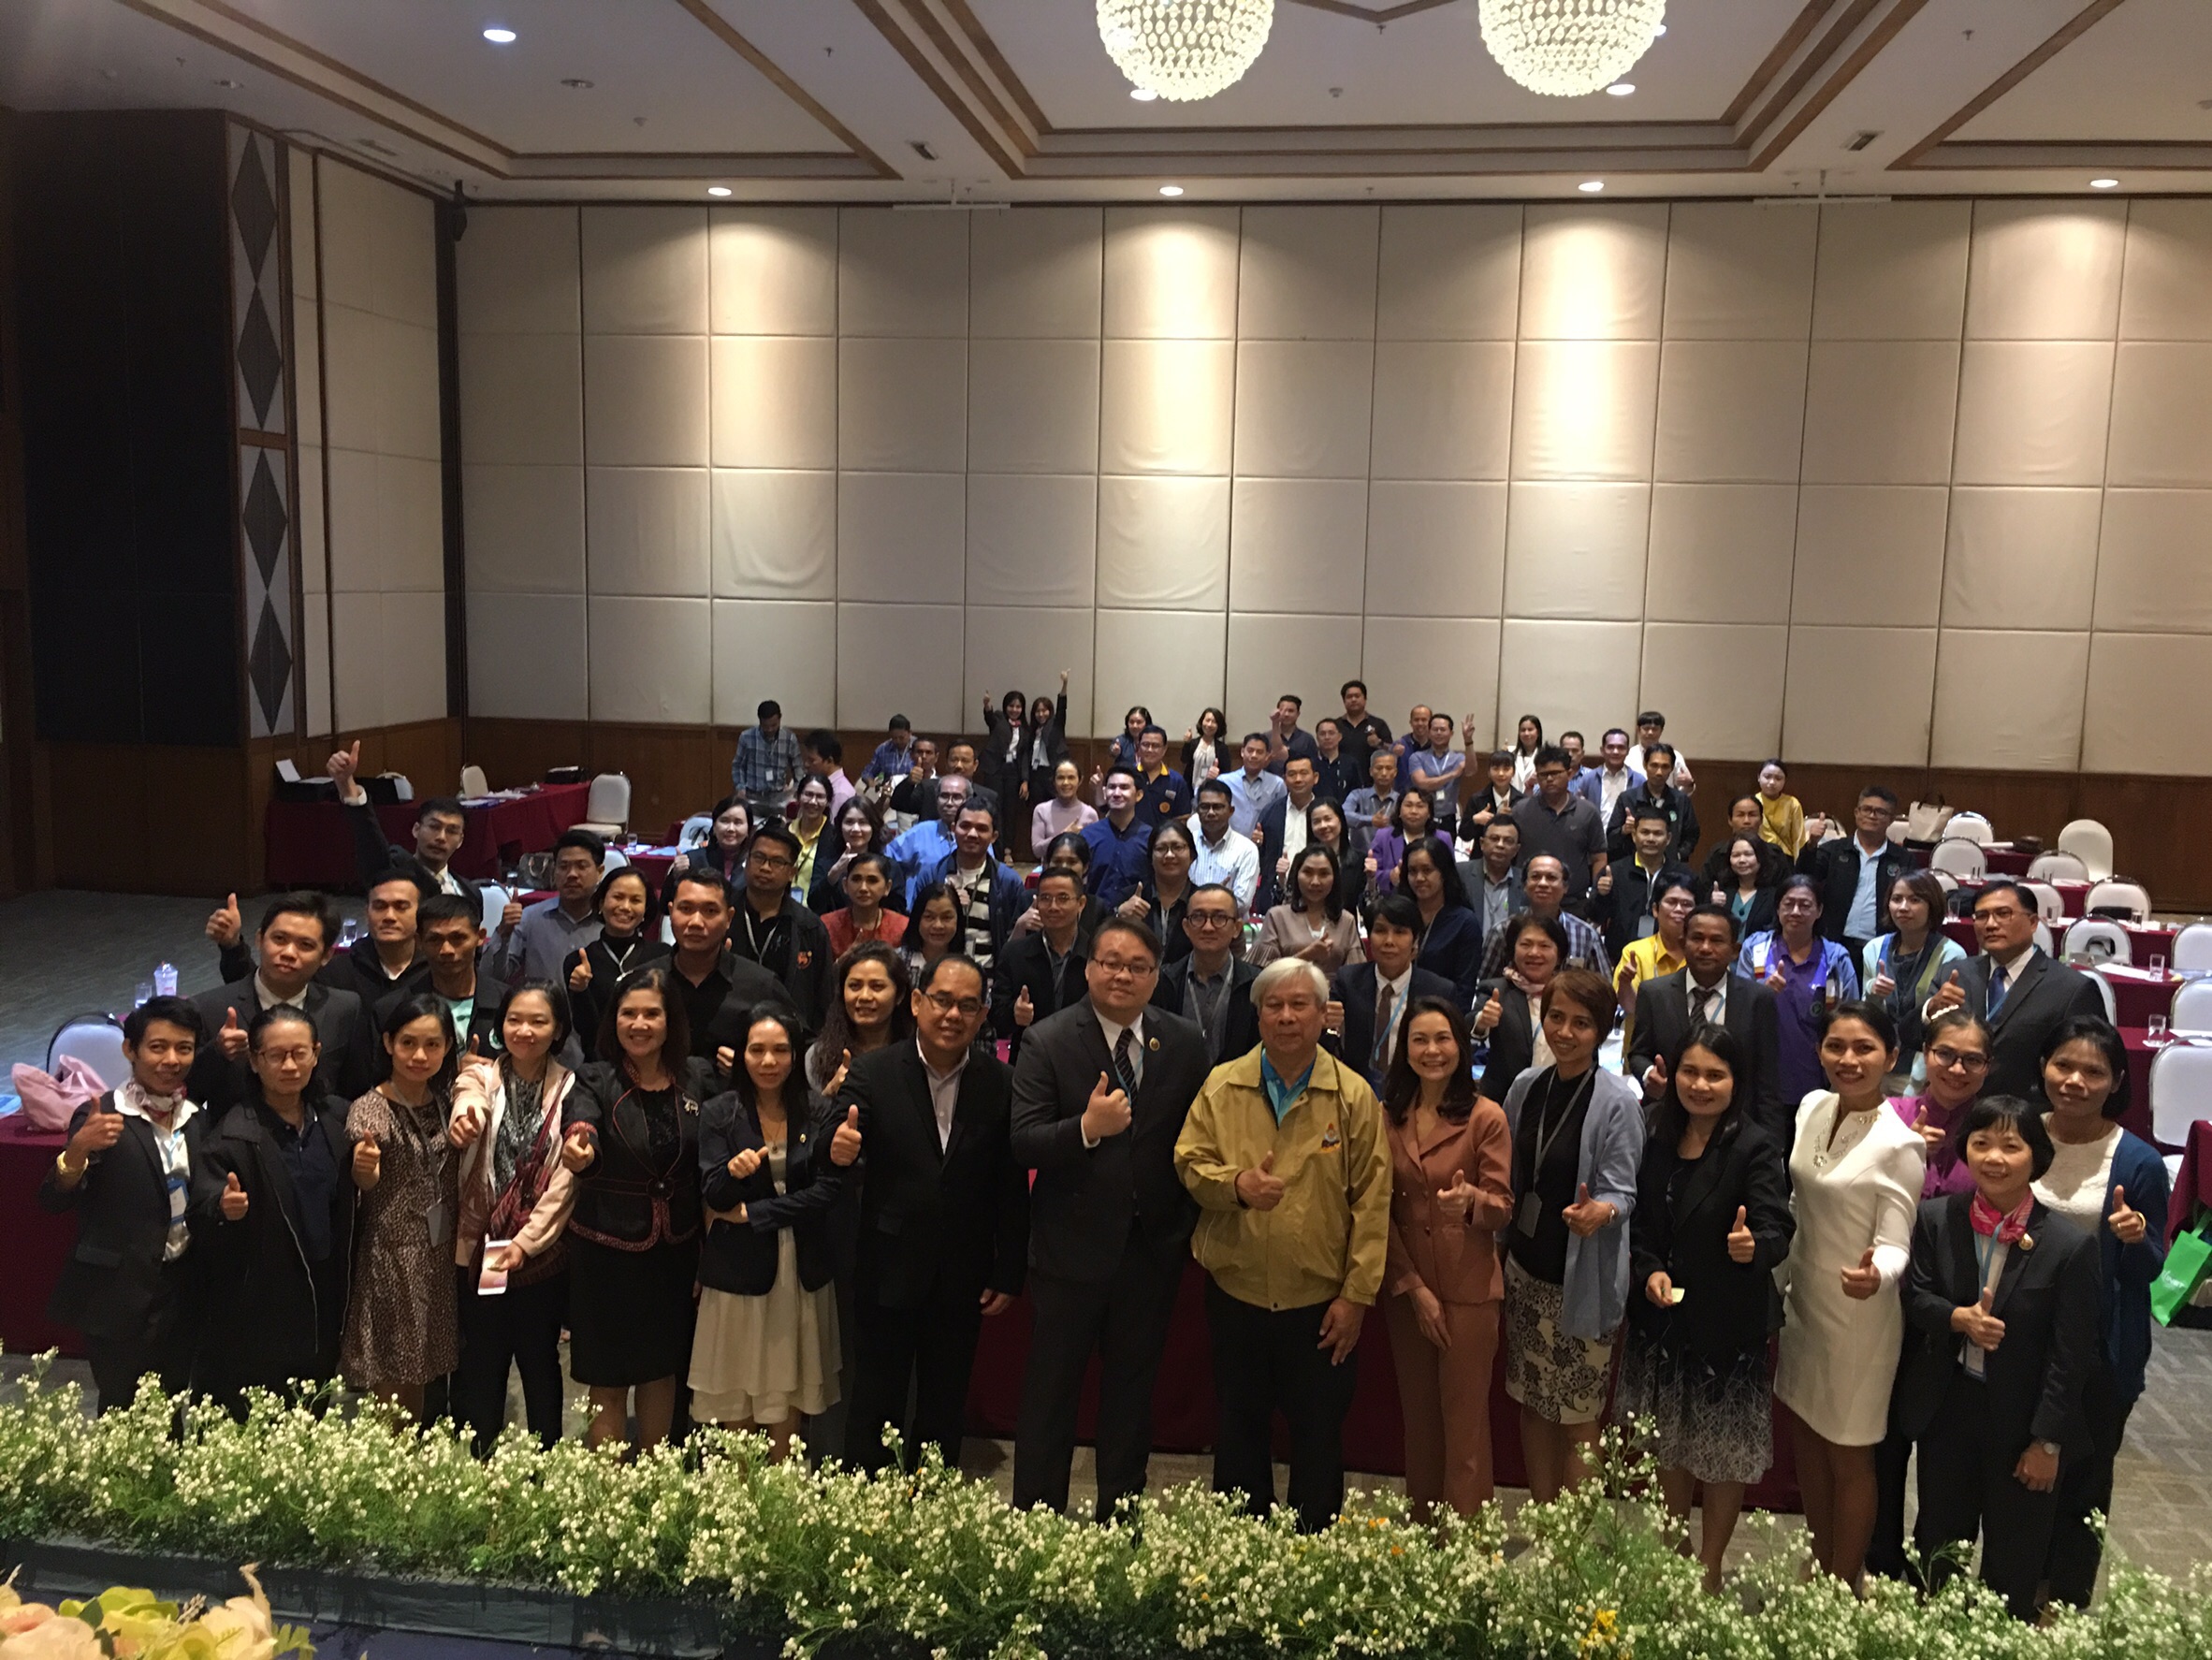 ประชุมวิชาการร่วมกับรังสีการแพทย์แห่งประเทศไทย ครั้งที่17 27-29 พ.ย. - พร้อมเข้าเยี่ยมและให้กำลังใจหน่วยงานรังสีวิทยาในพื้นที่จังหวัดอุบลราชธานีระหว่างวันที่ 25-26 พฤศจิกายน 2562 15